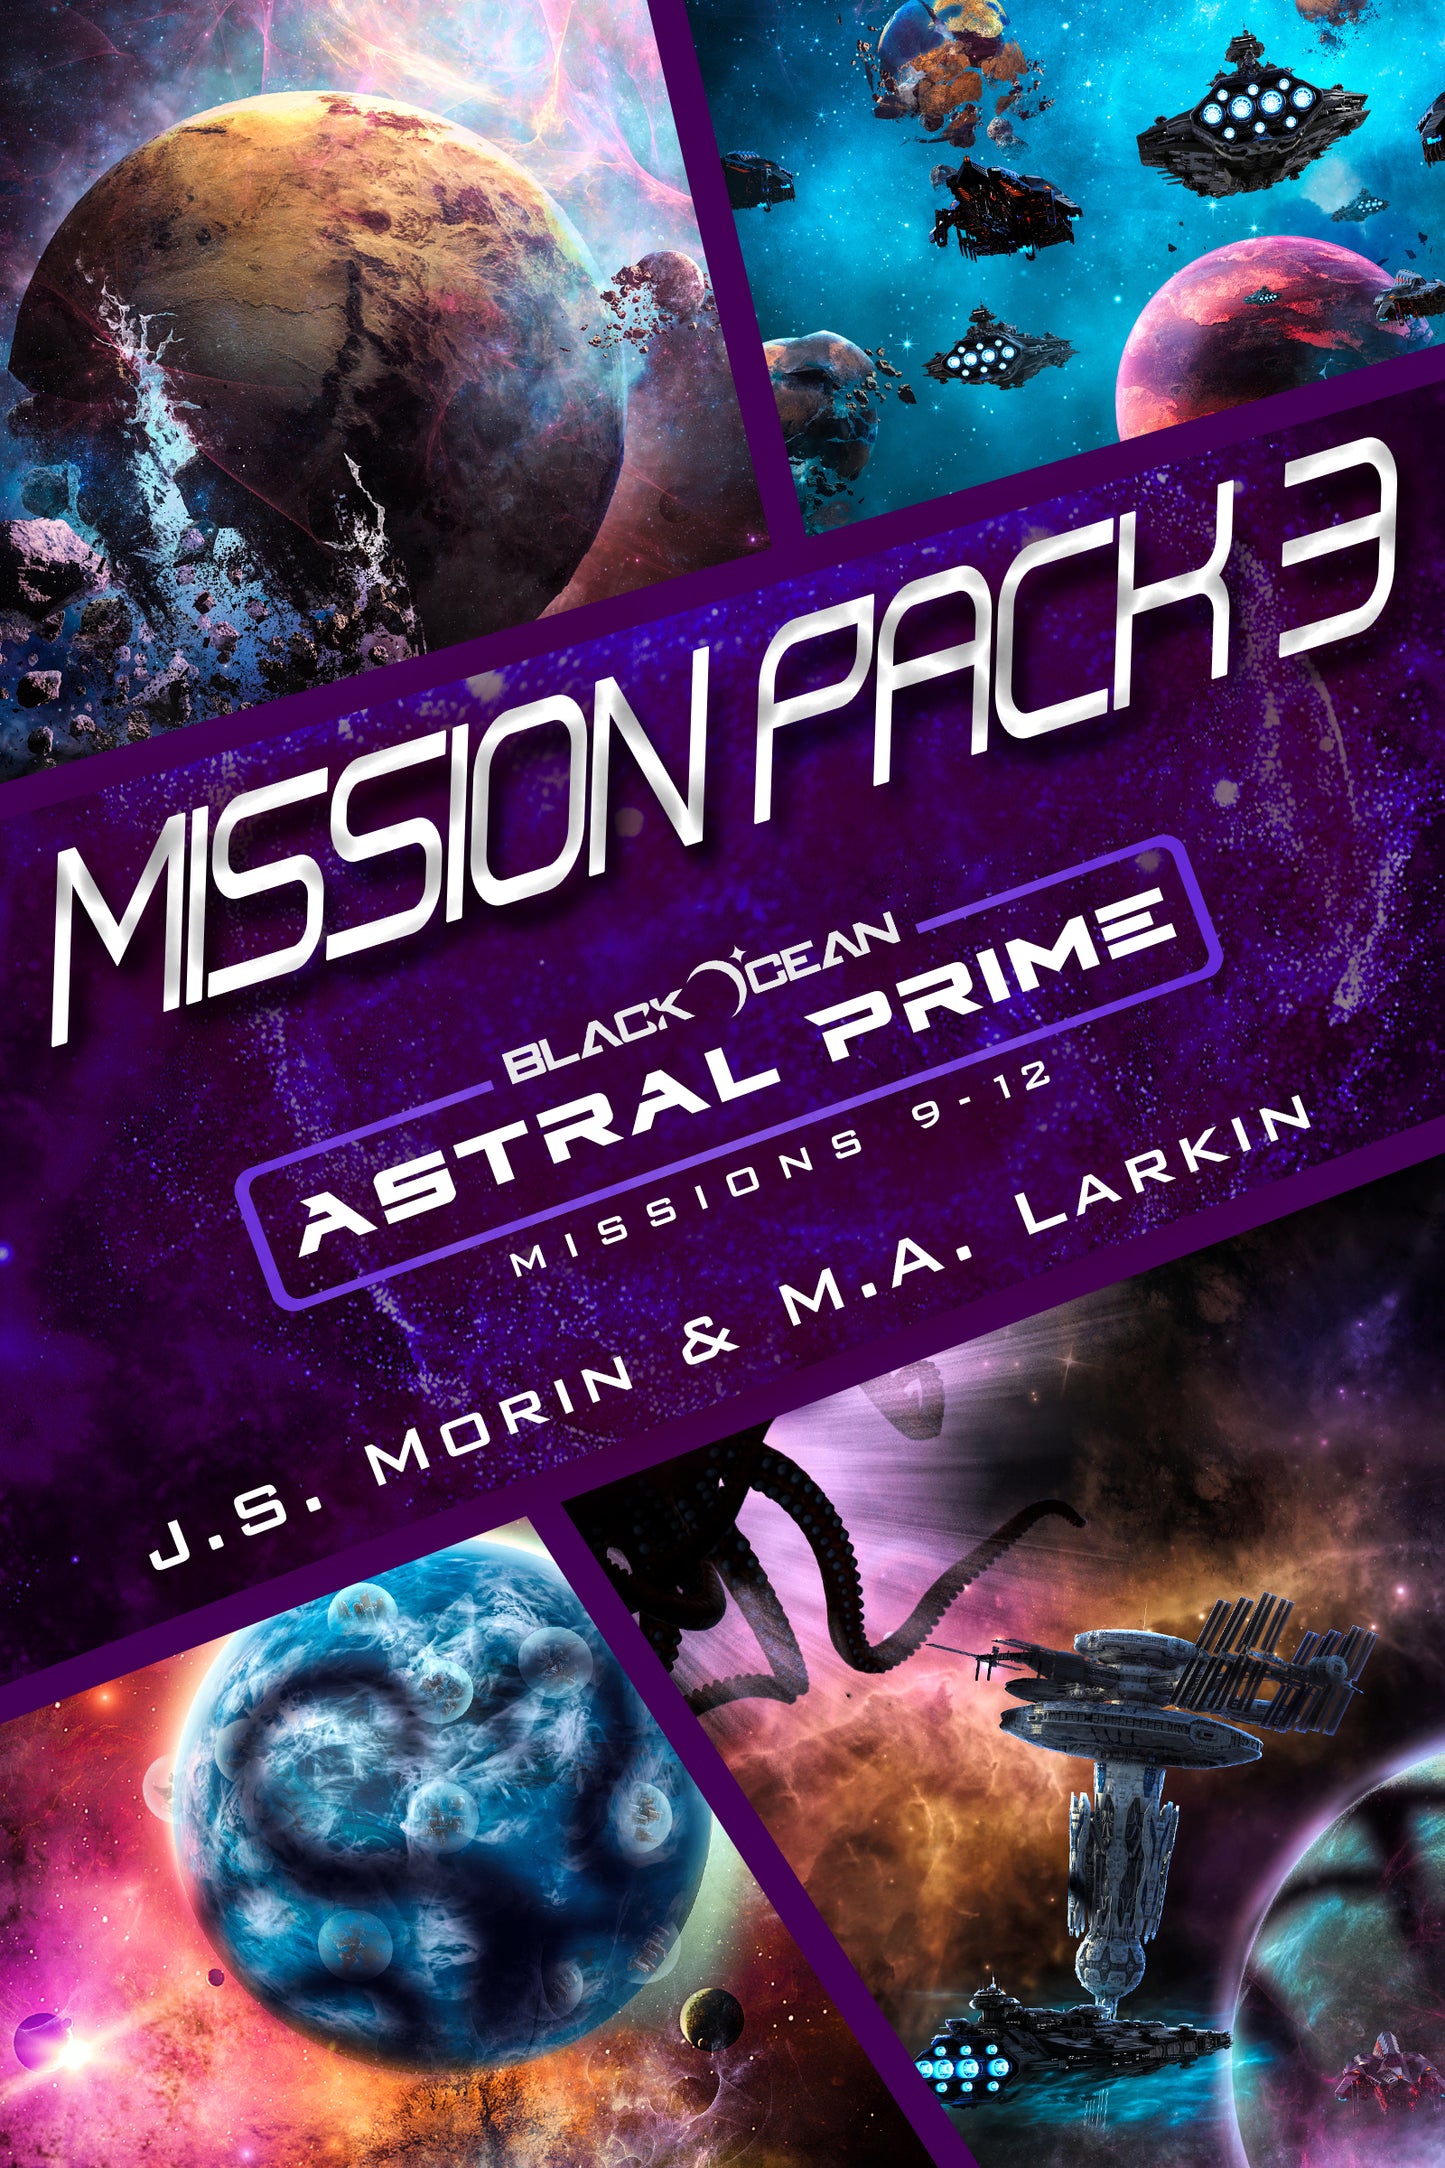 Mission Pack 3, Black Ocean: Astral Prime Missions 9-12